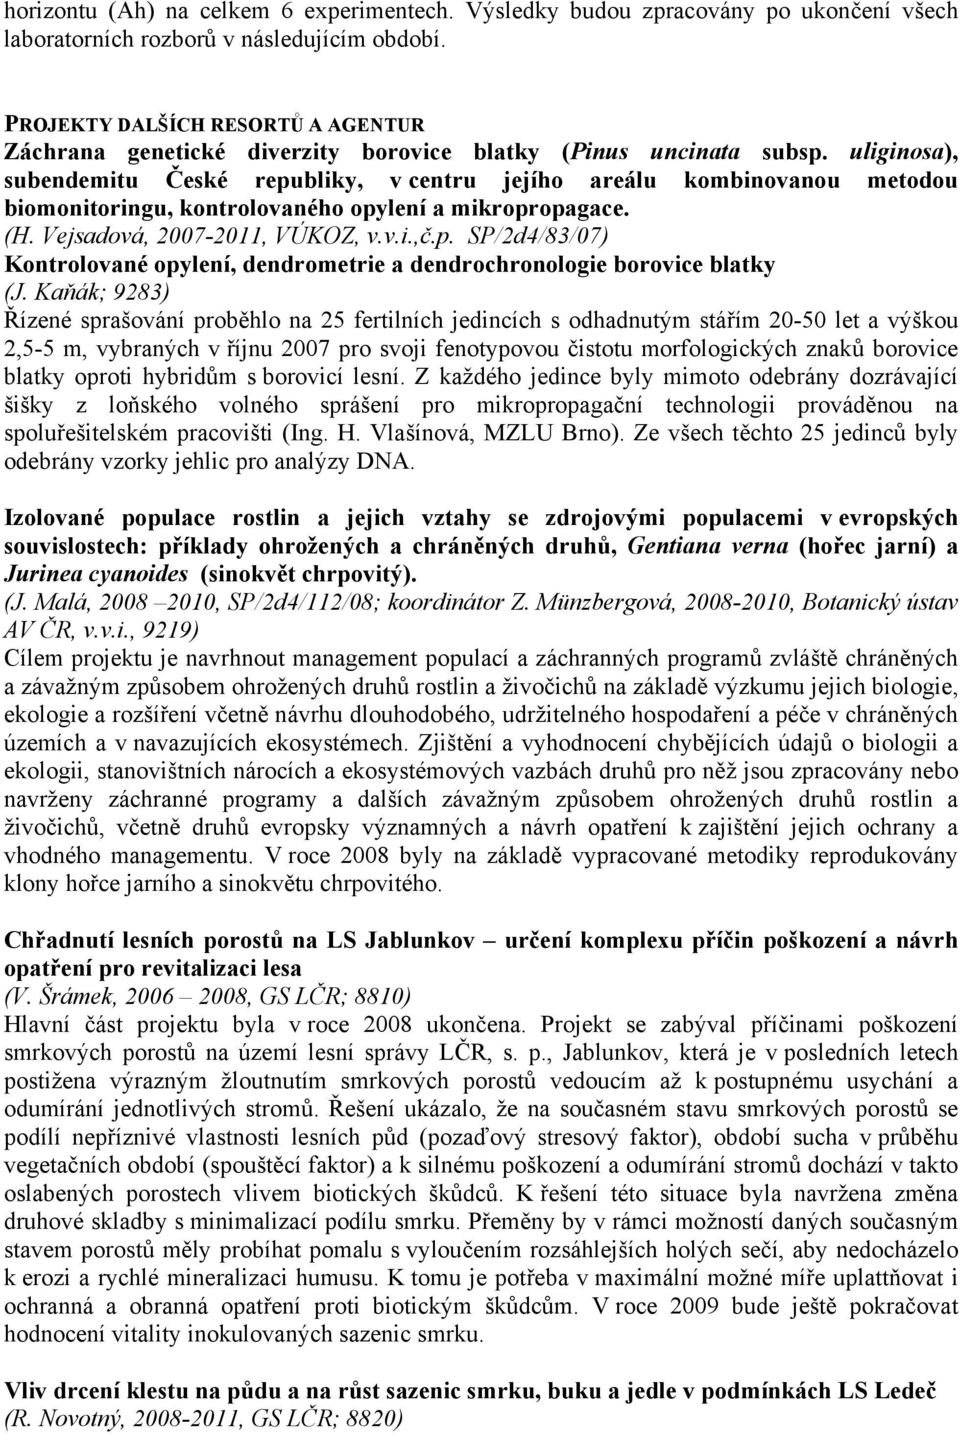 uliginosa), subendemitu České republiky, v centru jejího areálu kombinovanou metodou biomonitoringu, kontrolovaného opylení a mikropropagace. (H. Vejsadová, 2007-2011, VÚKOZ, v.v.i.,č.p. SP/2d4/83/07) Kontrolované opylení, dendrometrie a dendrochronologie borovice blatky (J.